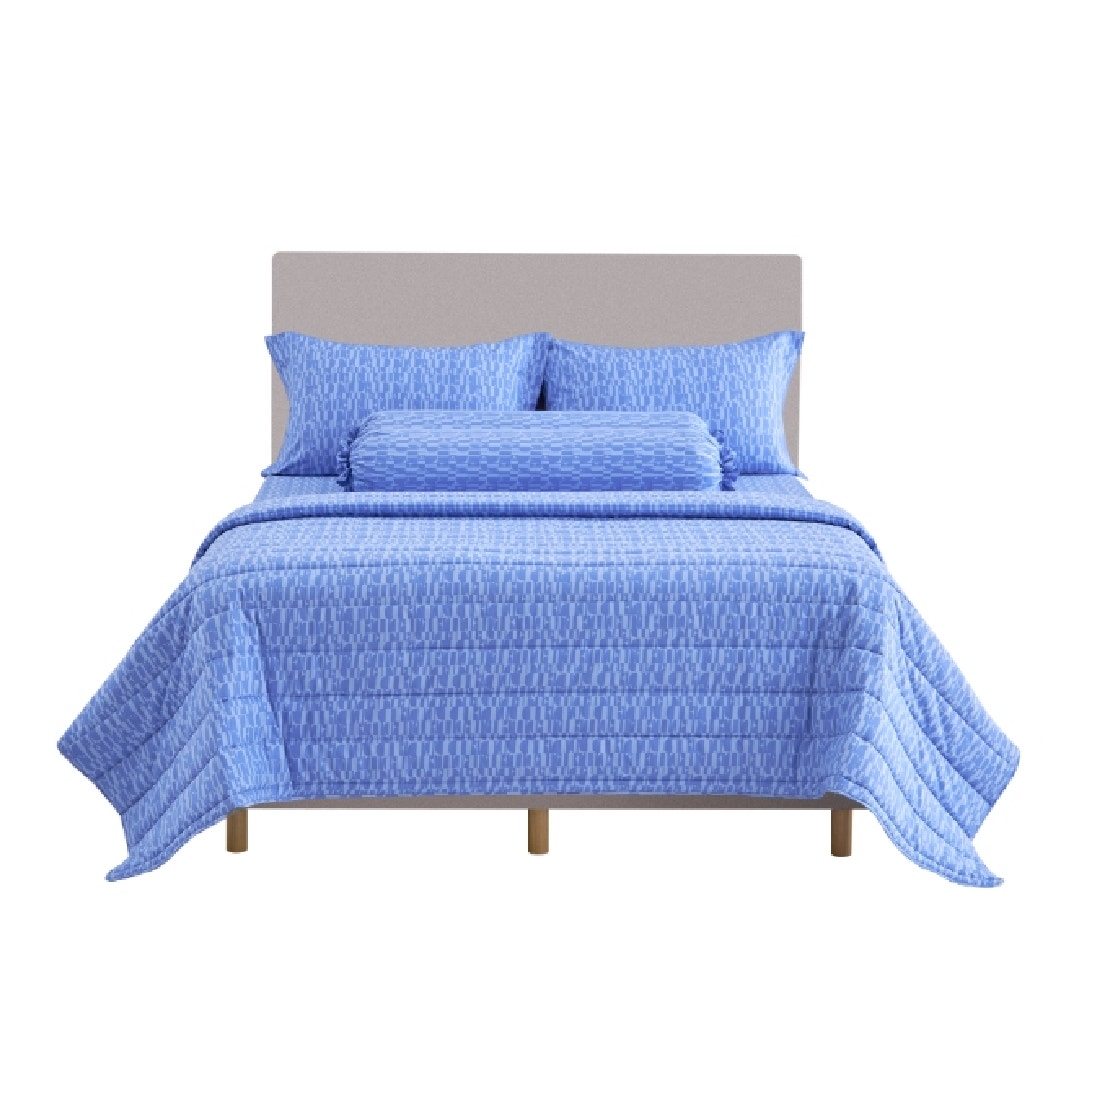 ชุดผ้าปูที่นอนพร้อมผ้านวม ELLE DECOR รุ่น PARIS SIMPLICITE - MACARONS ขนาด 5ฟุต 6ชิ้น